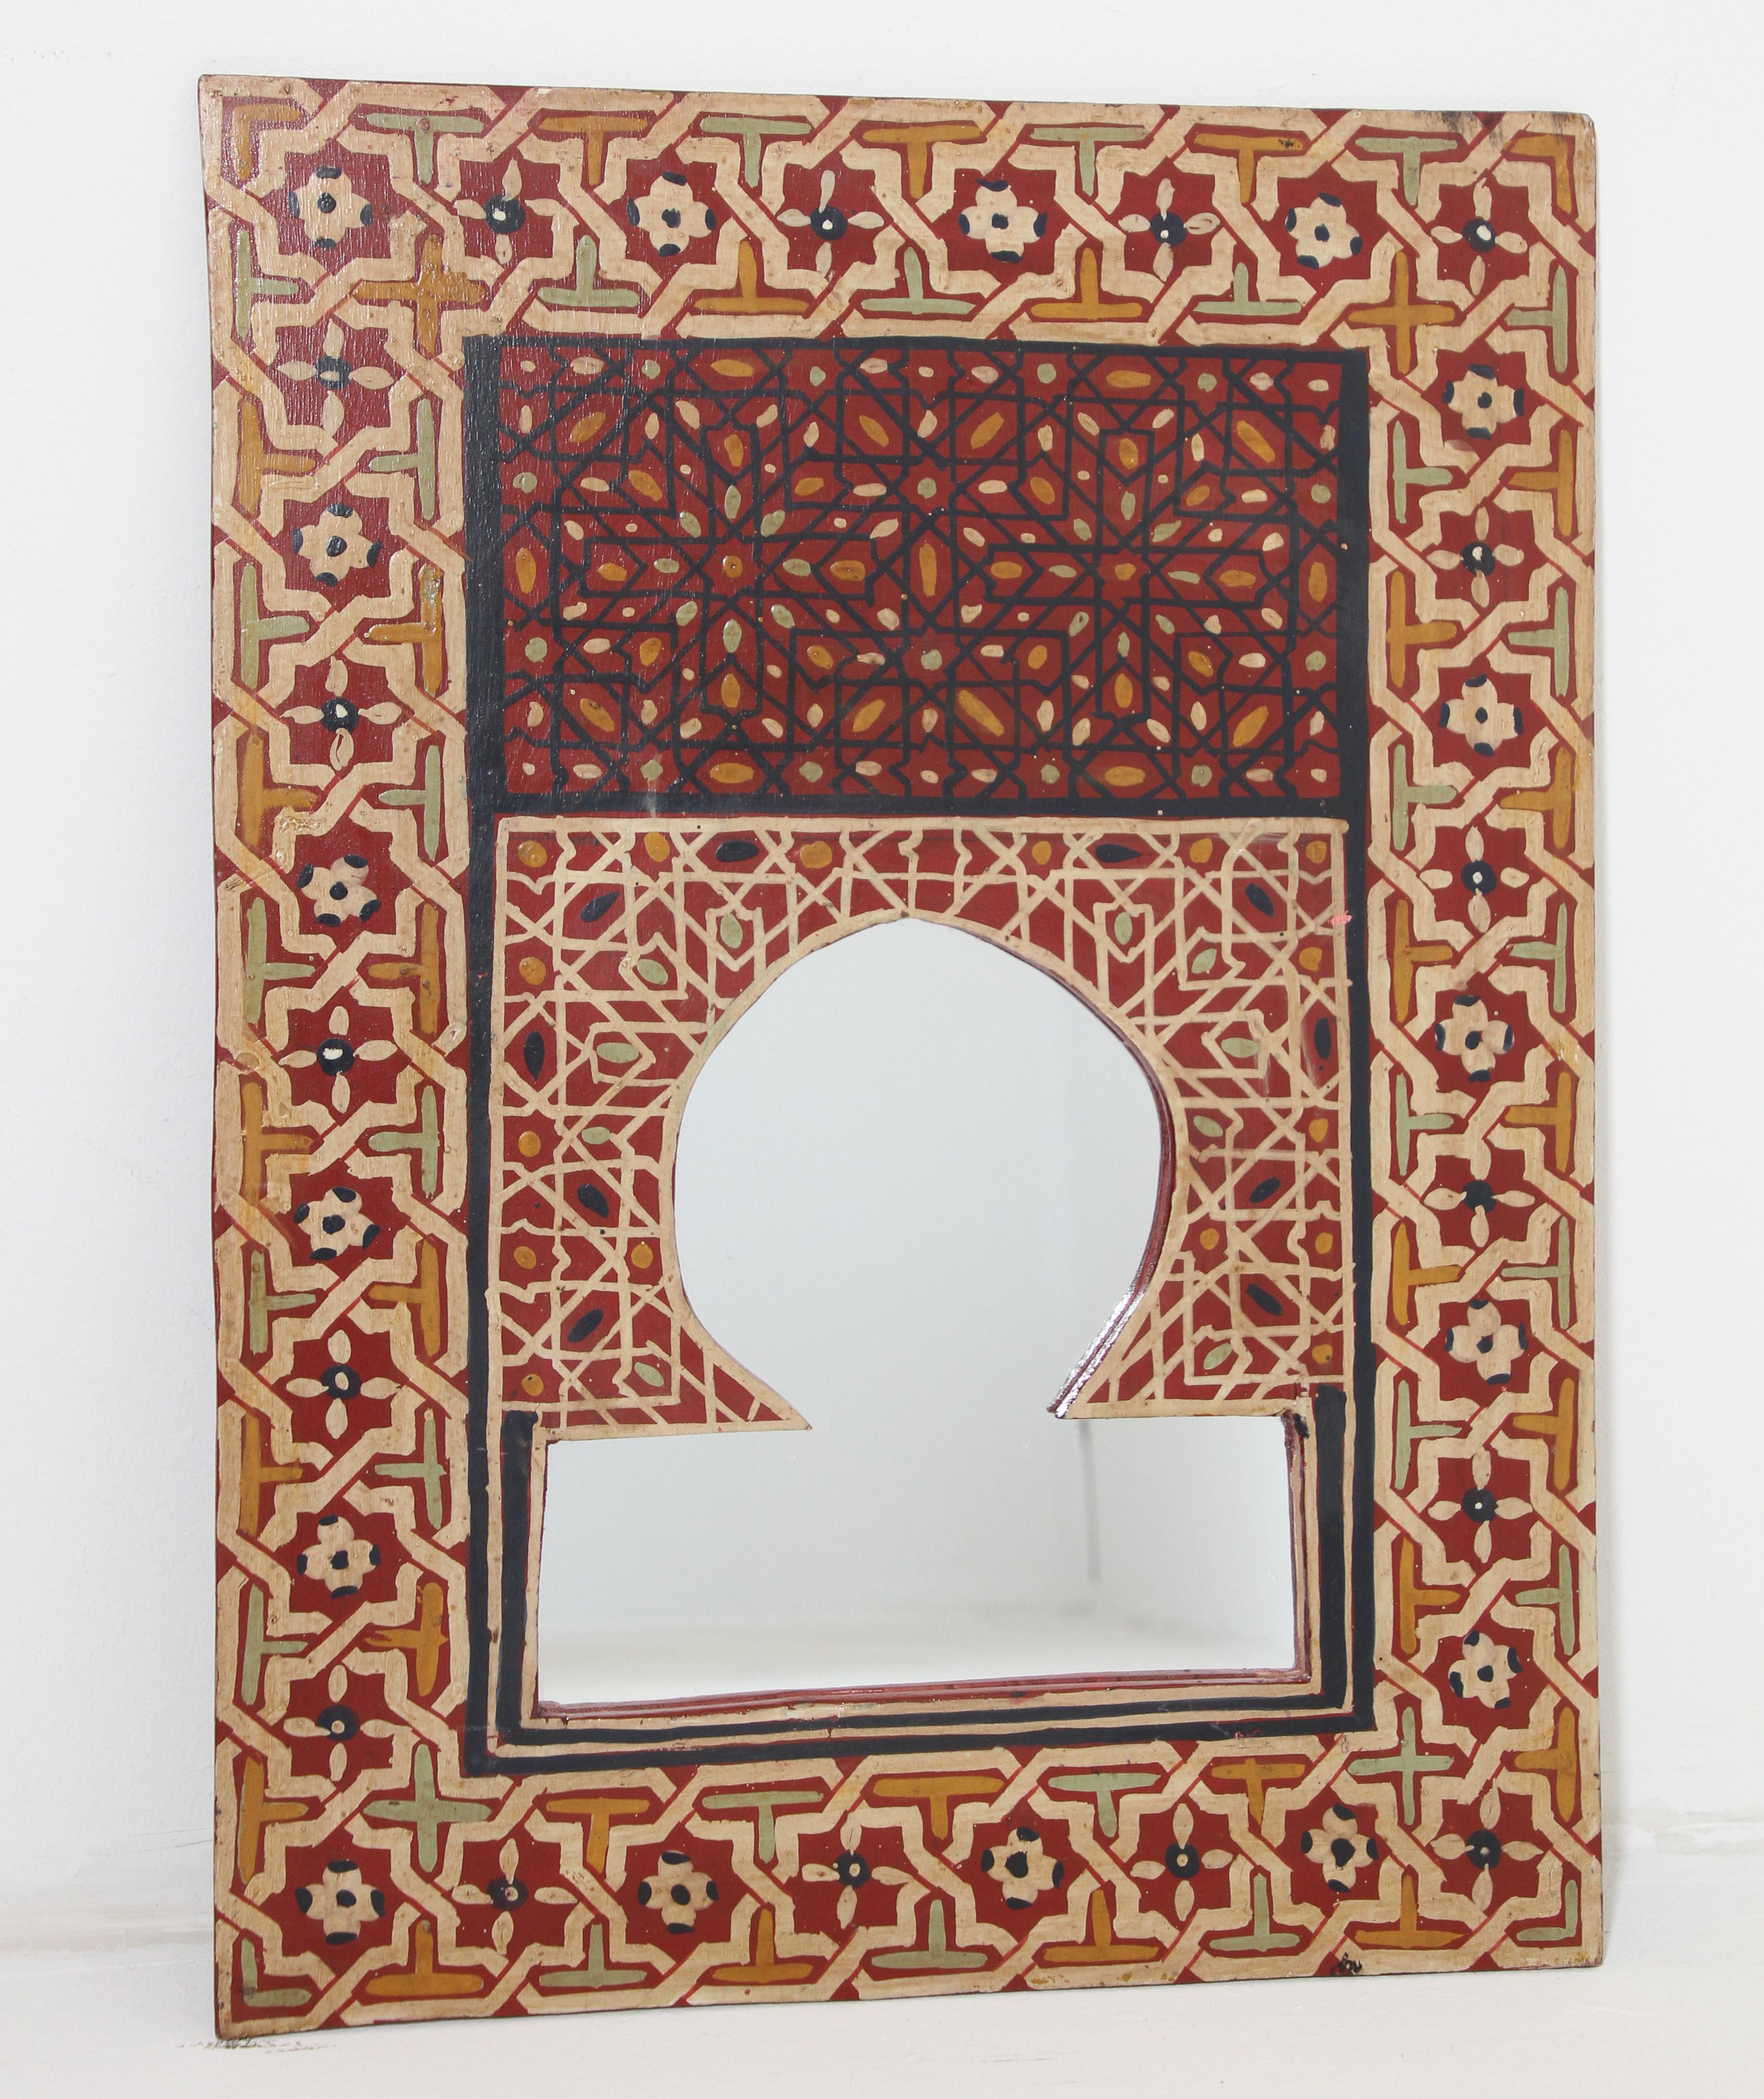 Vintage marokkanischen Spiegel, handbemalt, Holz maurischen Fenster geformt Spiegel.
Wunderschöner handgefertigter Spiegel in einem traditionellen, handgemalten maurischen Detaildesign mit aufwendigen Arabesken und geometrischem Design.
Dieser